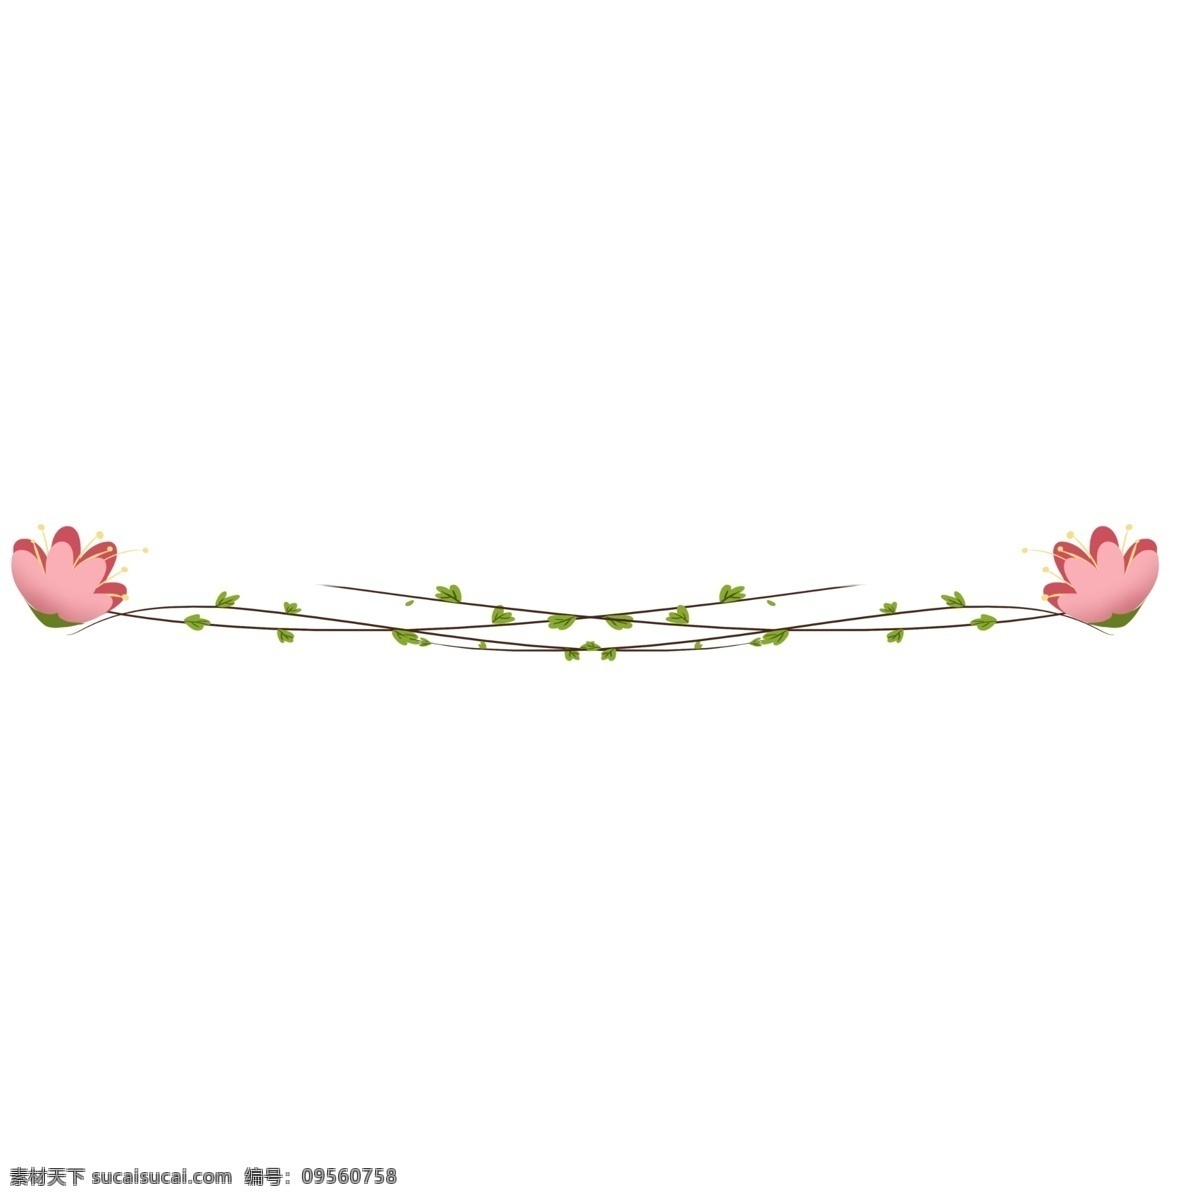 花朵 叶子 分割线 插画 花朵分割线 叶子分割线 分割线插画 红色小花 花儿 花儿分割线 植物